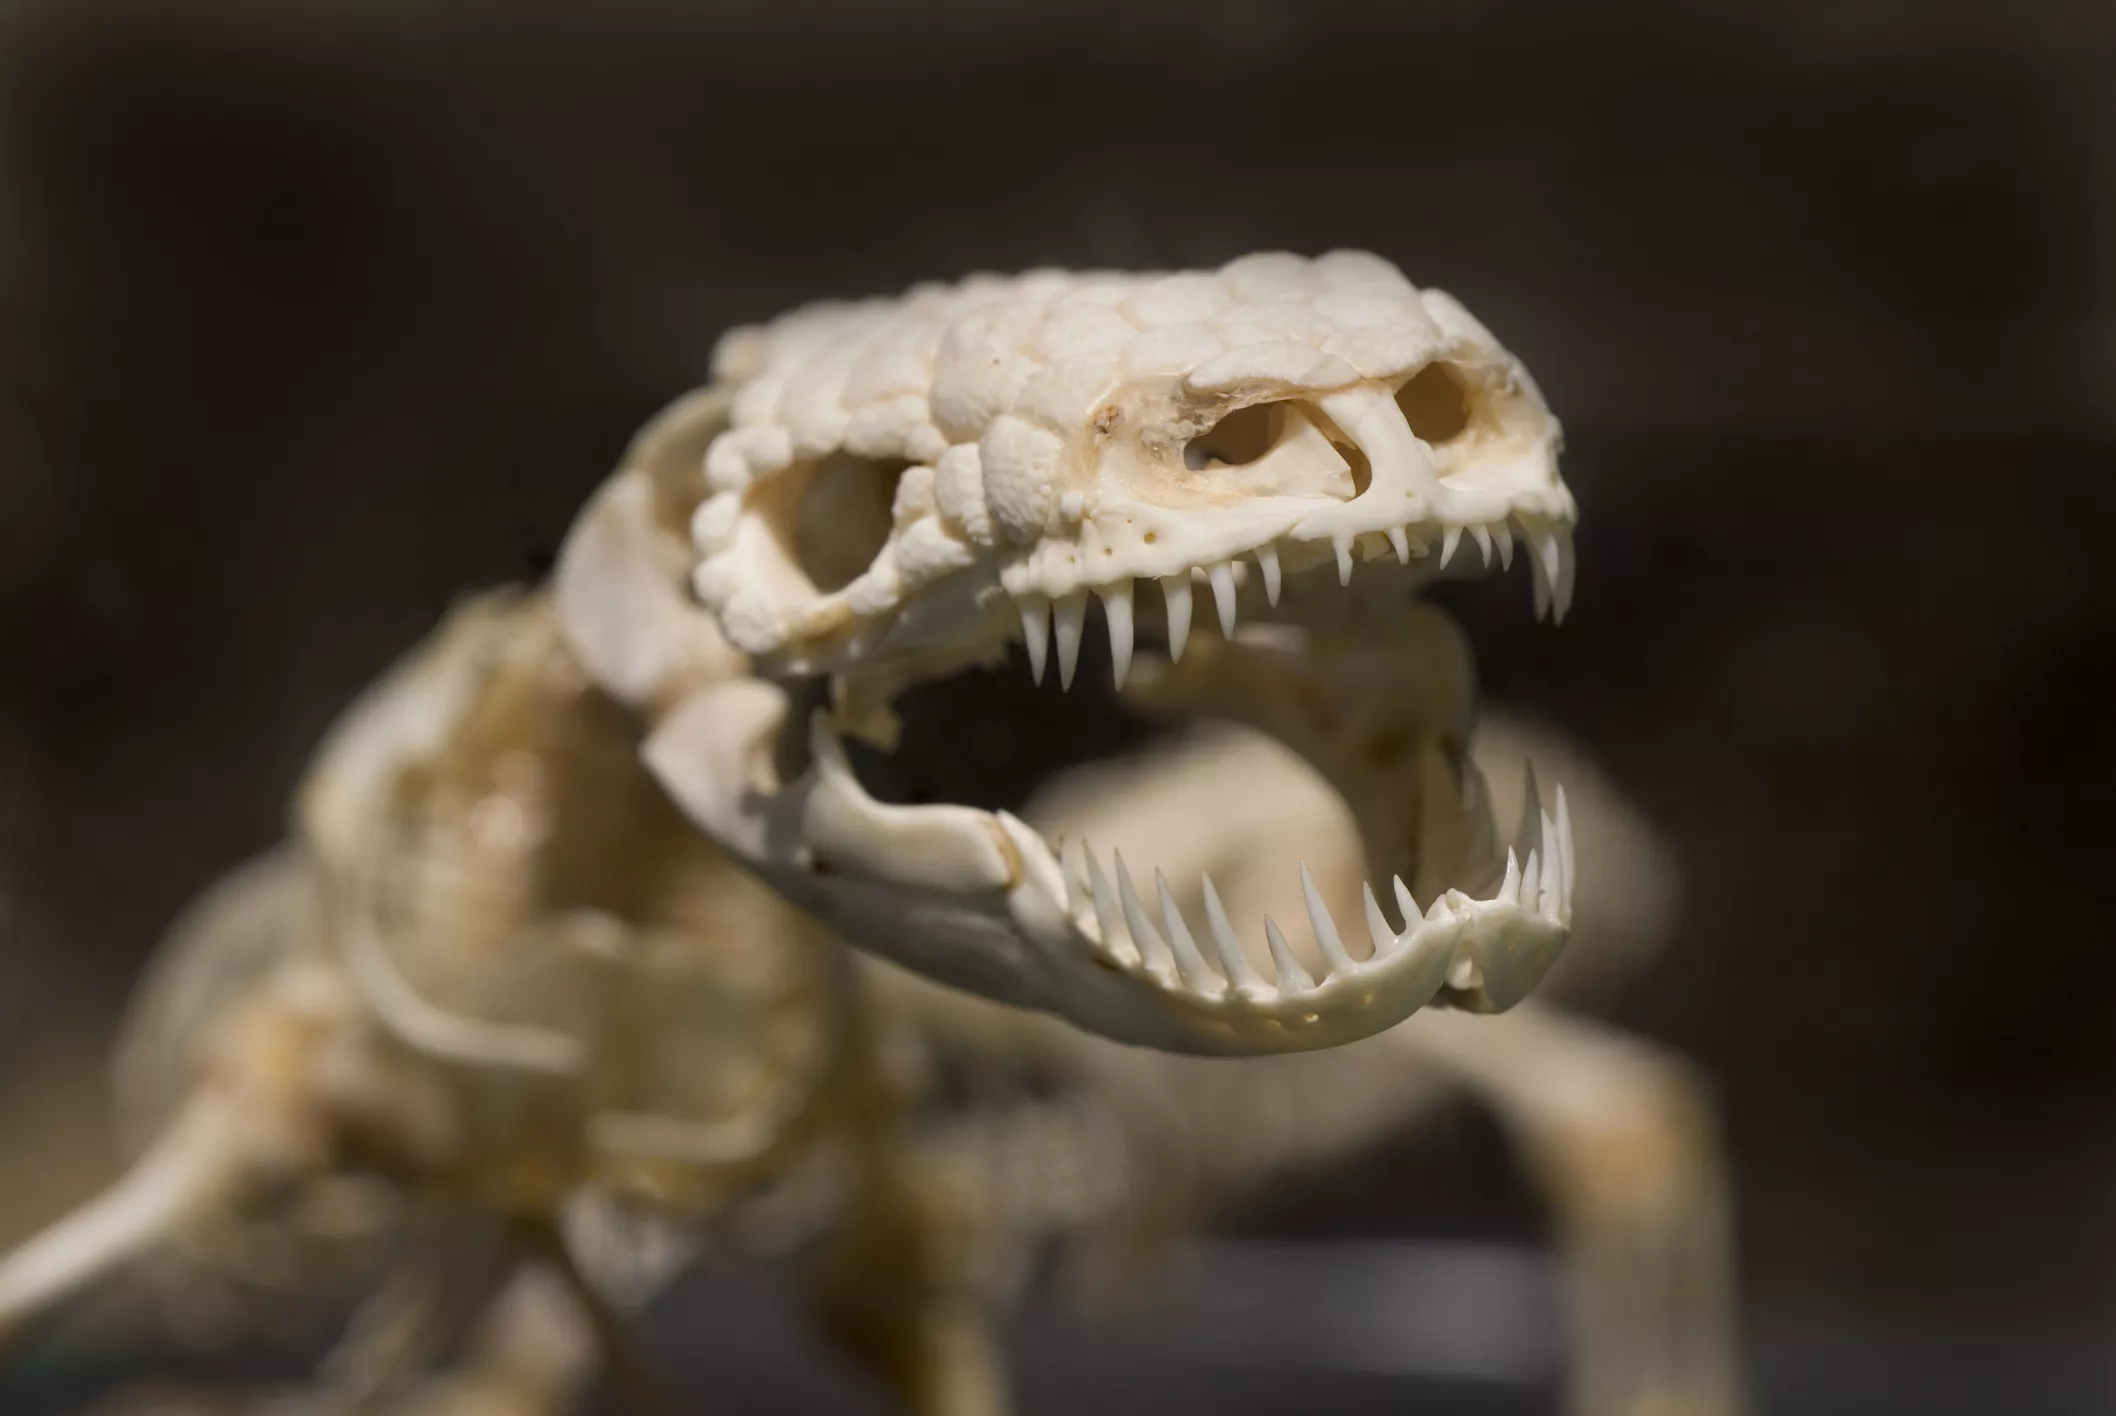 Gila Monster Skeleton on display